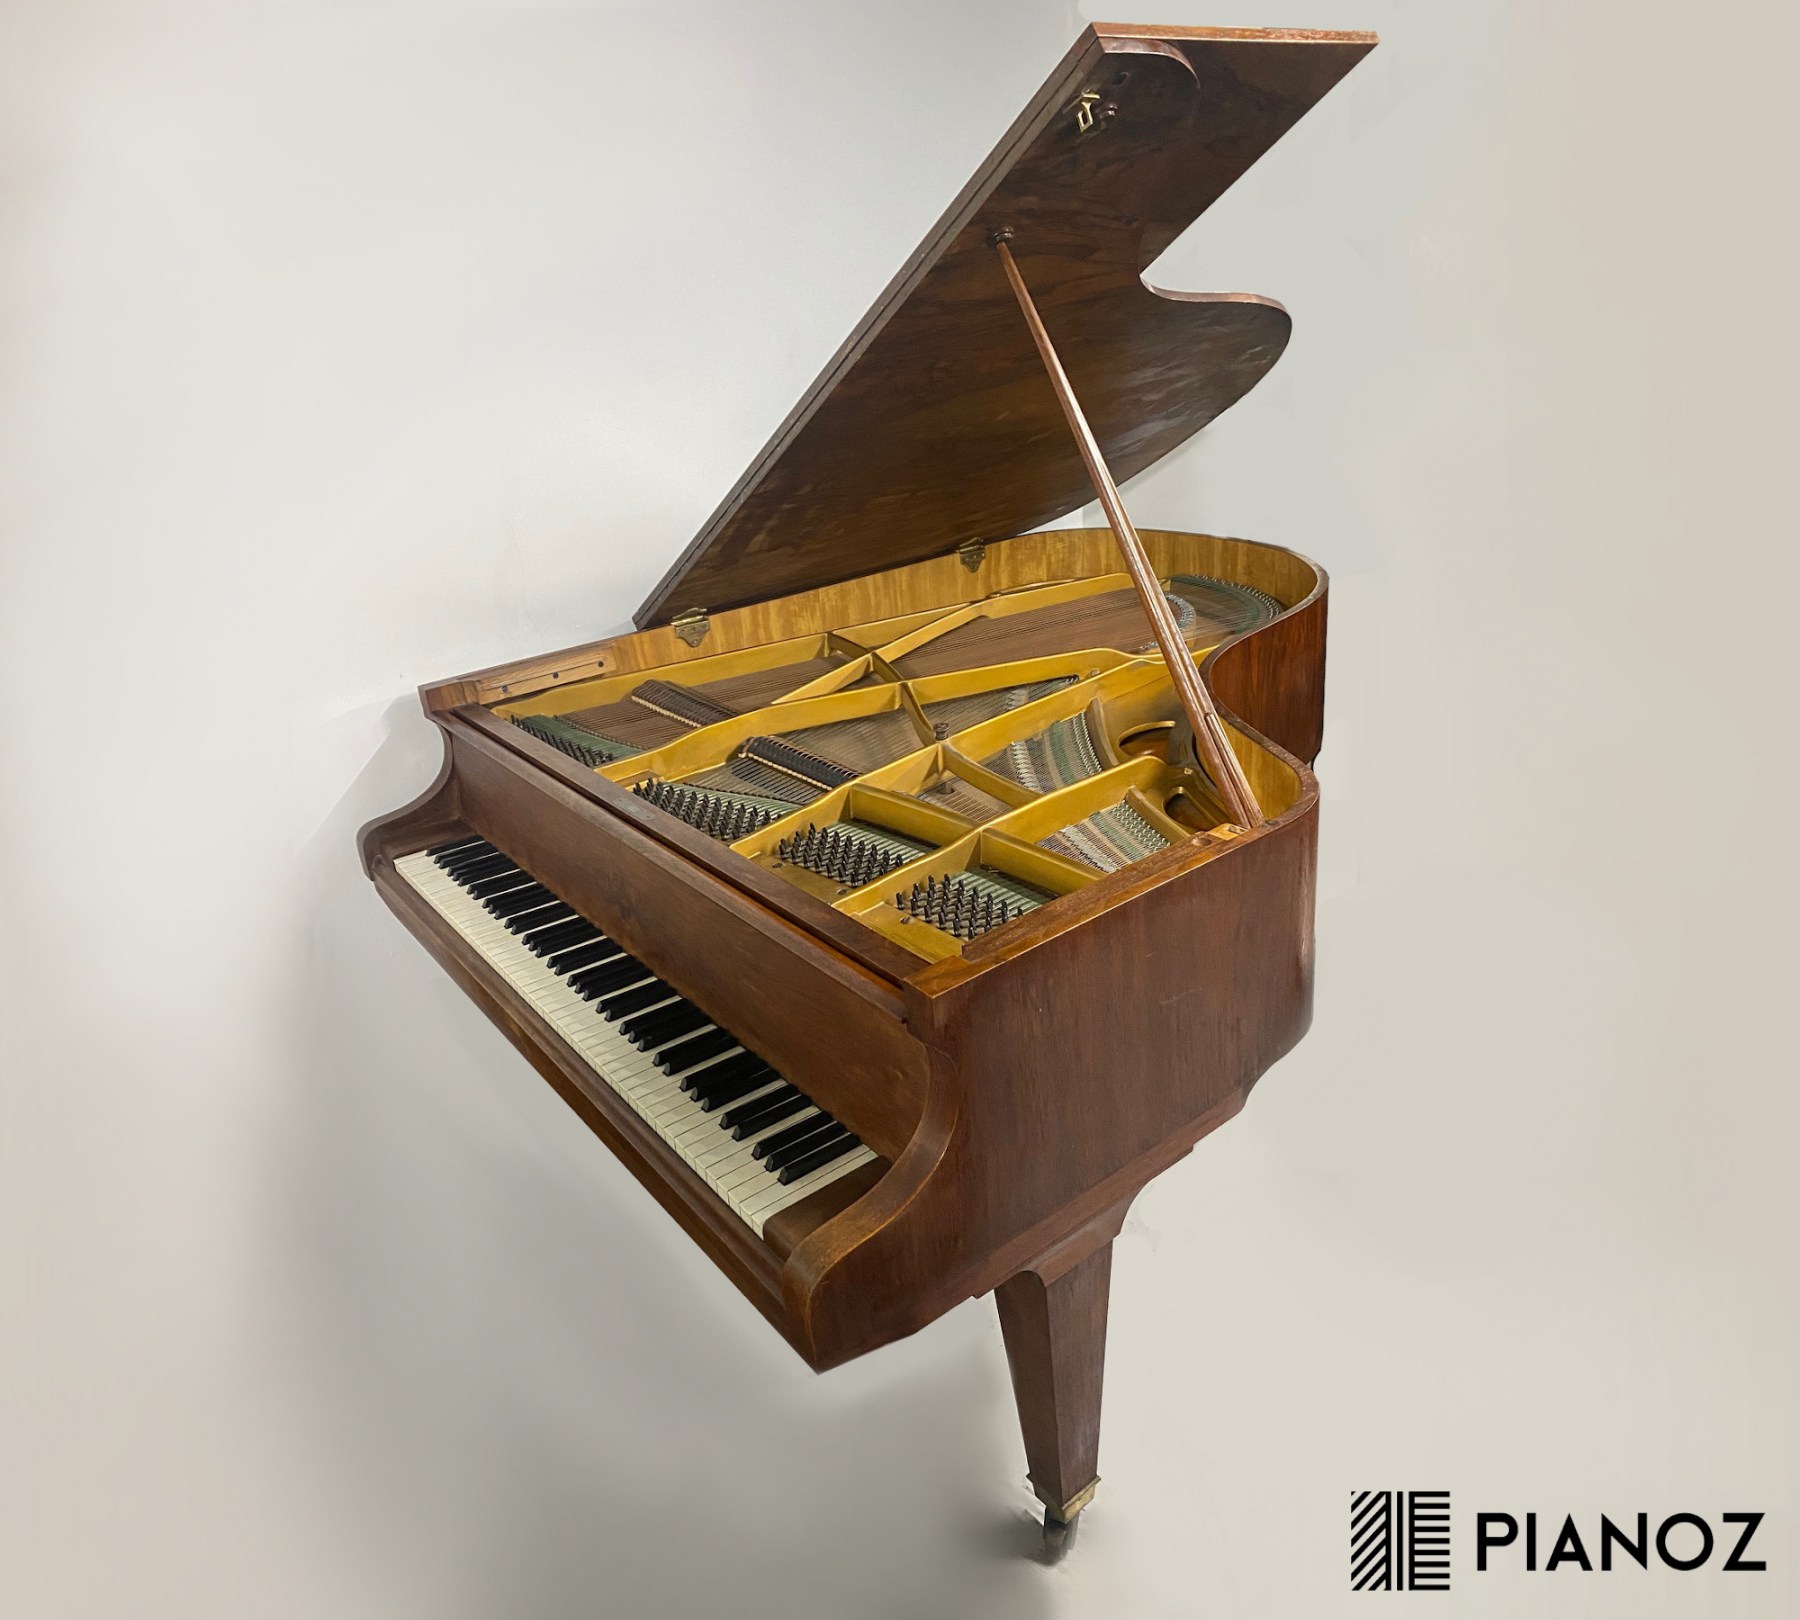 Ibach Walnut Grand Piano piano for sale in UK